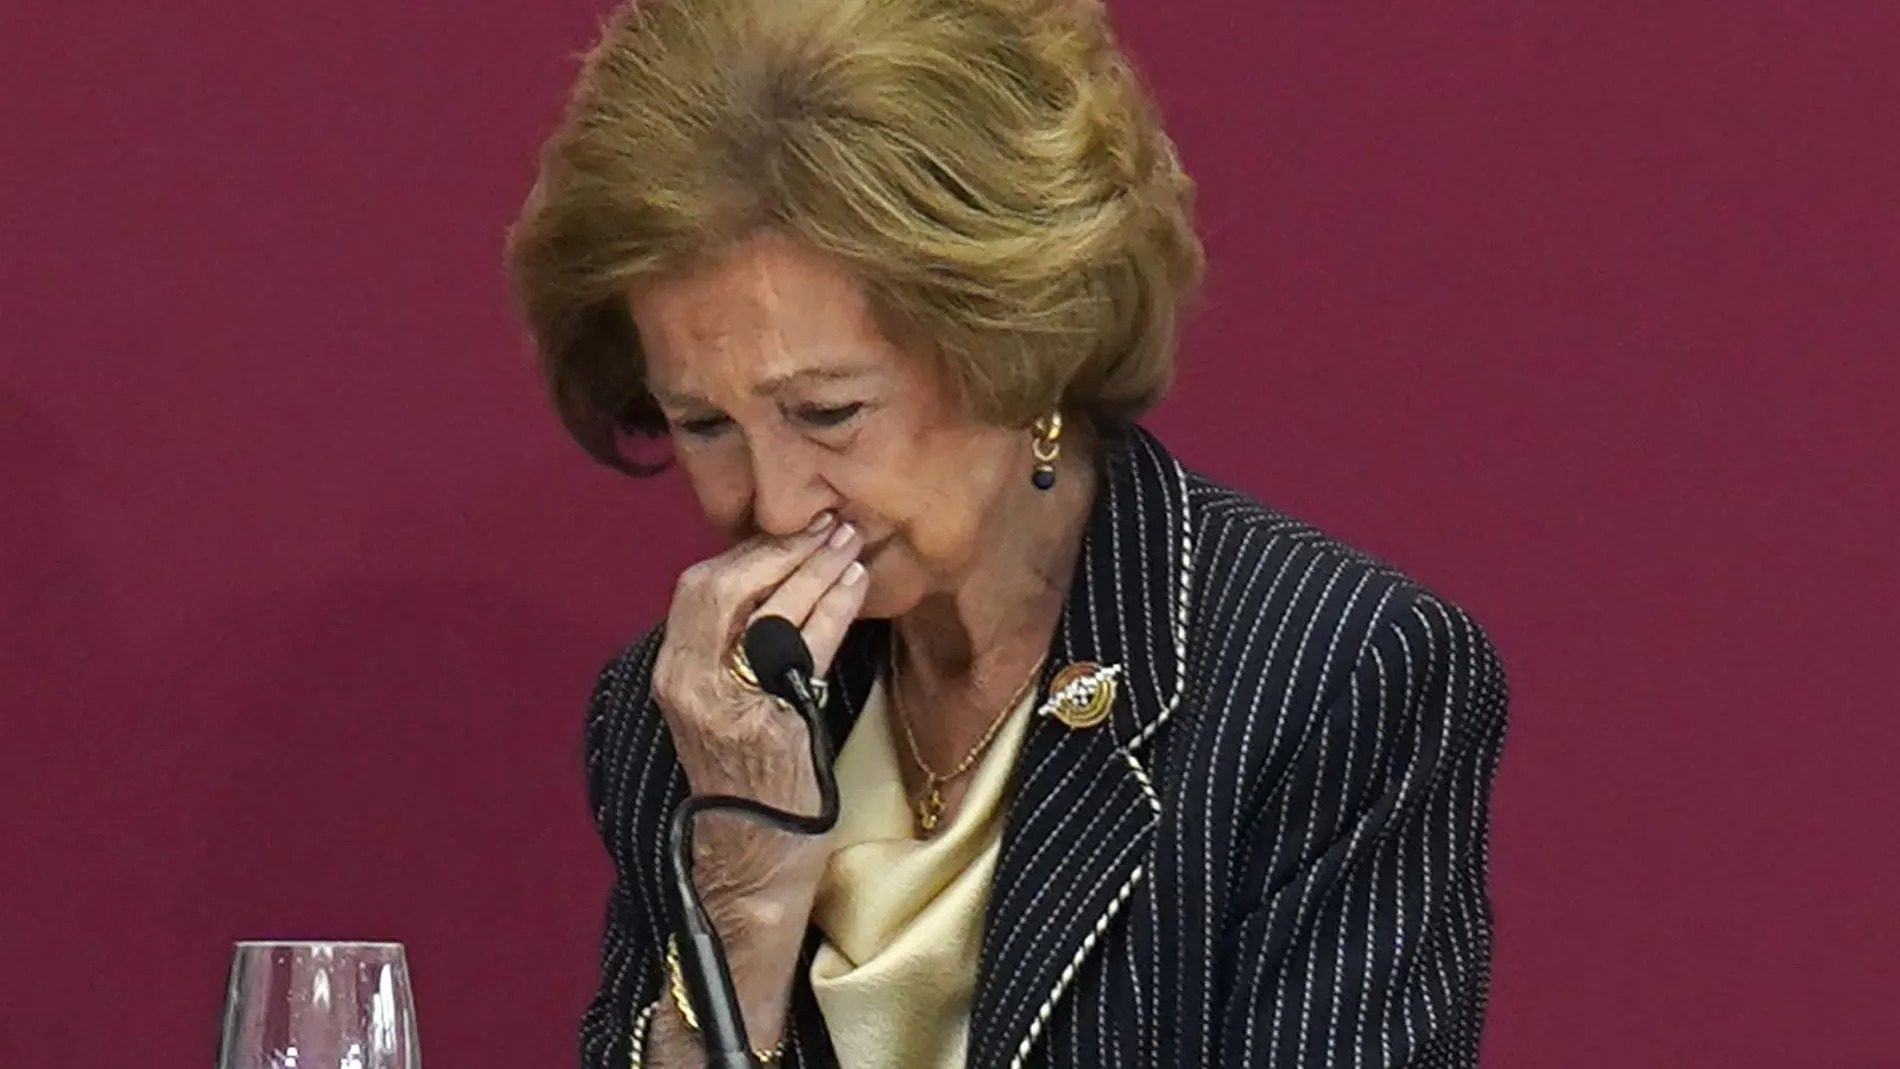 La reina Sofía abrazada a su hijo, Felipe VI, los 2 llorando, el peor día que se recuerda en Zarzuela